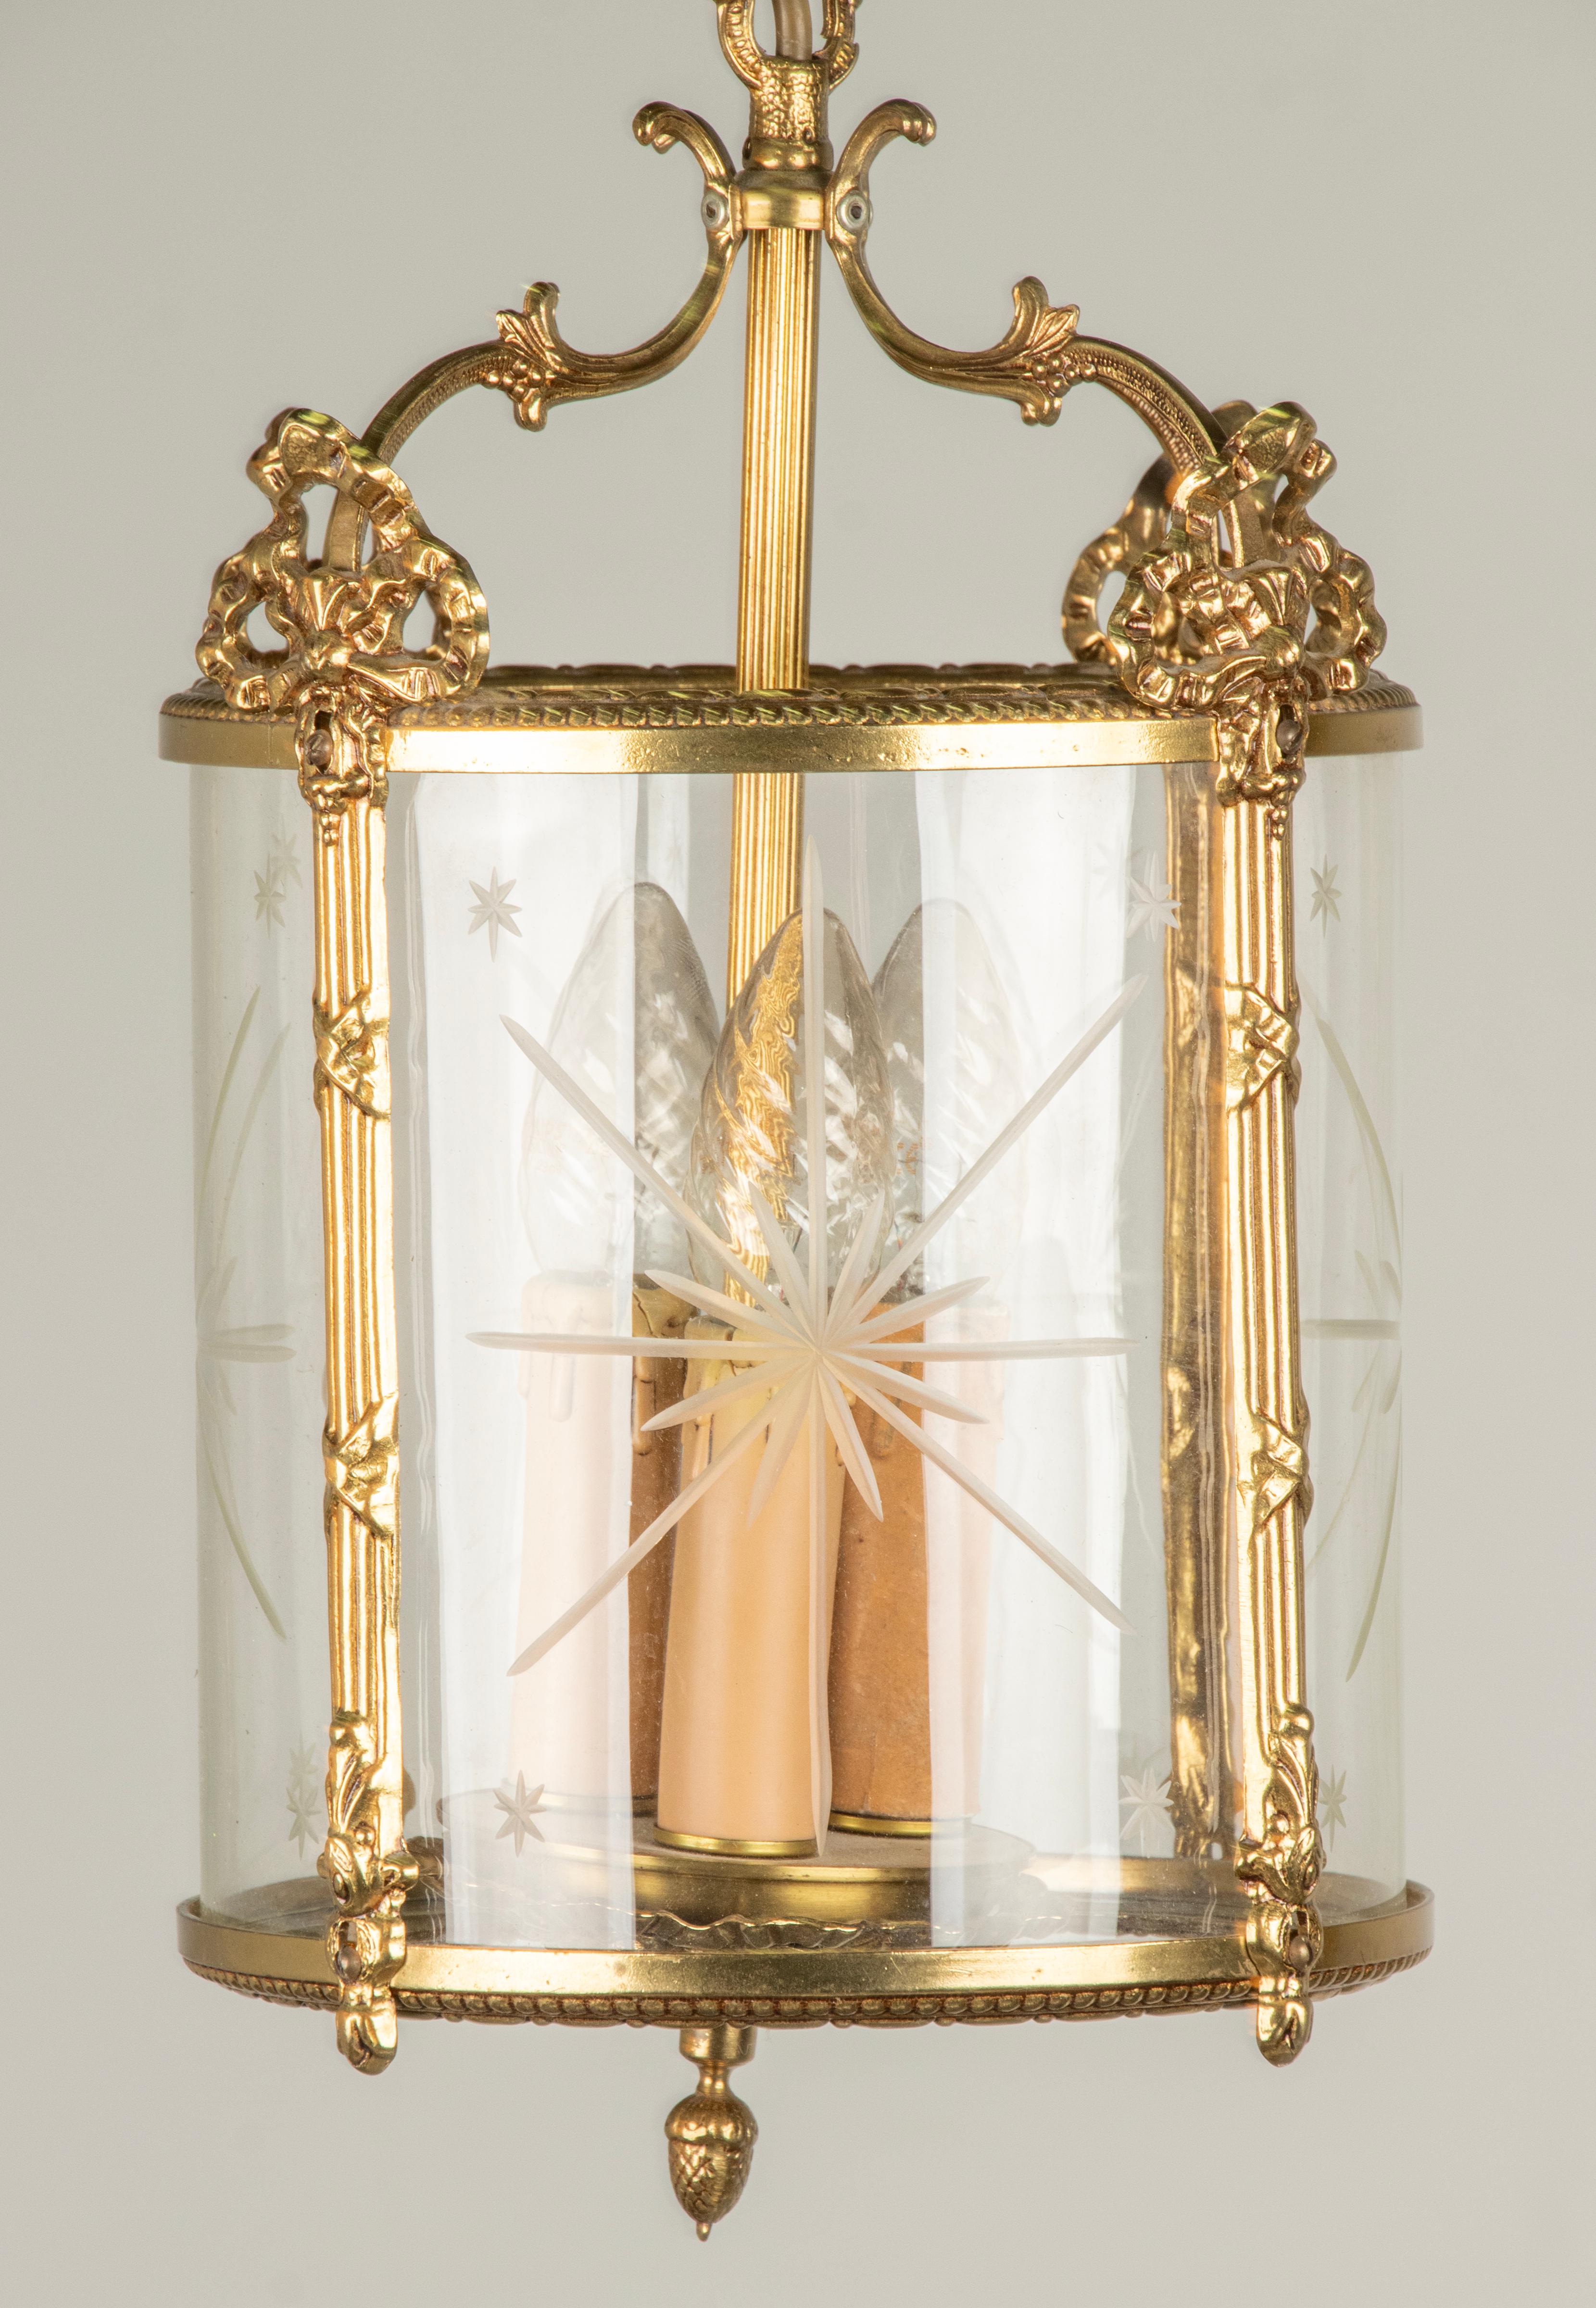 Eine Laterne aus Messing im Louis XVI-Stil. Verziert mit Bändern und Schleifen. Innen ein Glasschirm mit geschliffenem Sternmuster. Im Inneren ist Platz für 3 Lampenfassungen für E14-Glühbirnen. 
Hergestellt in Belgien, ca. 1960-1970. 

Abmessungen: